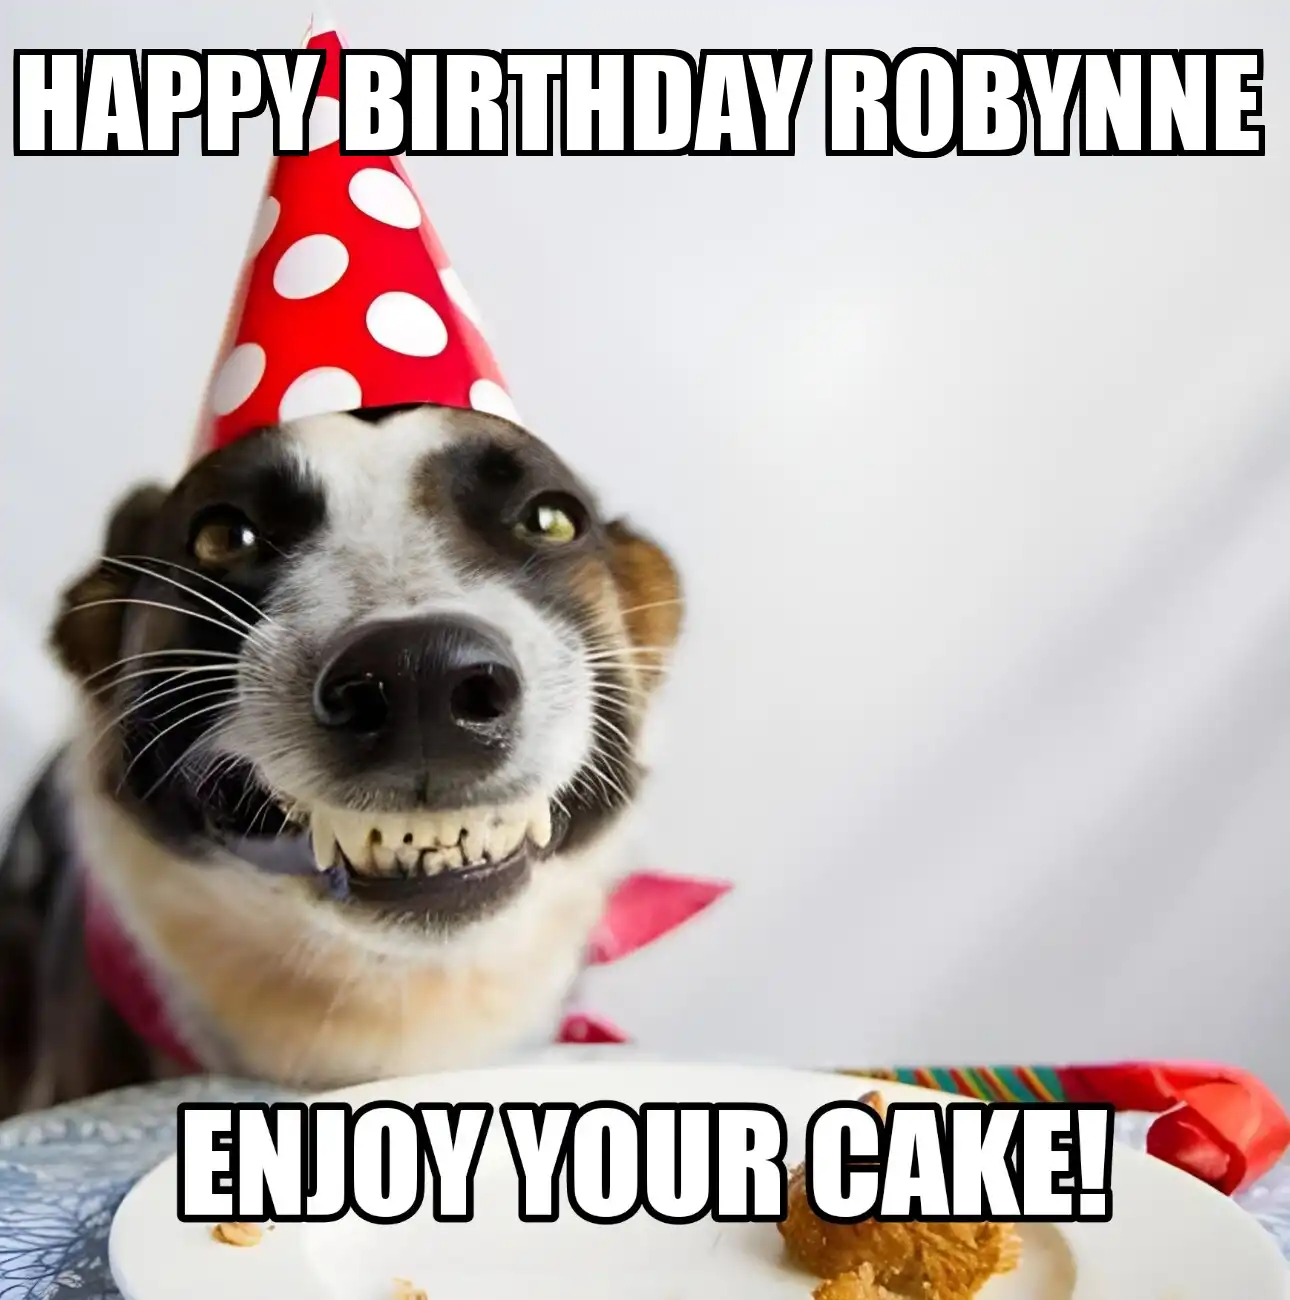 Happy Birthday Robynne Enjoy Your Cake Dog Meme